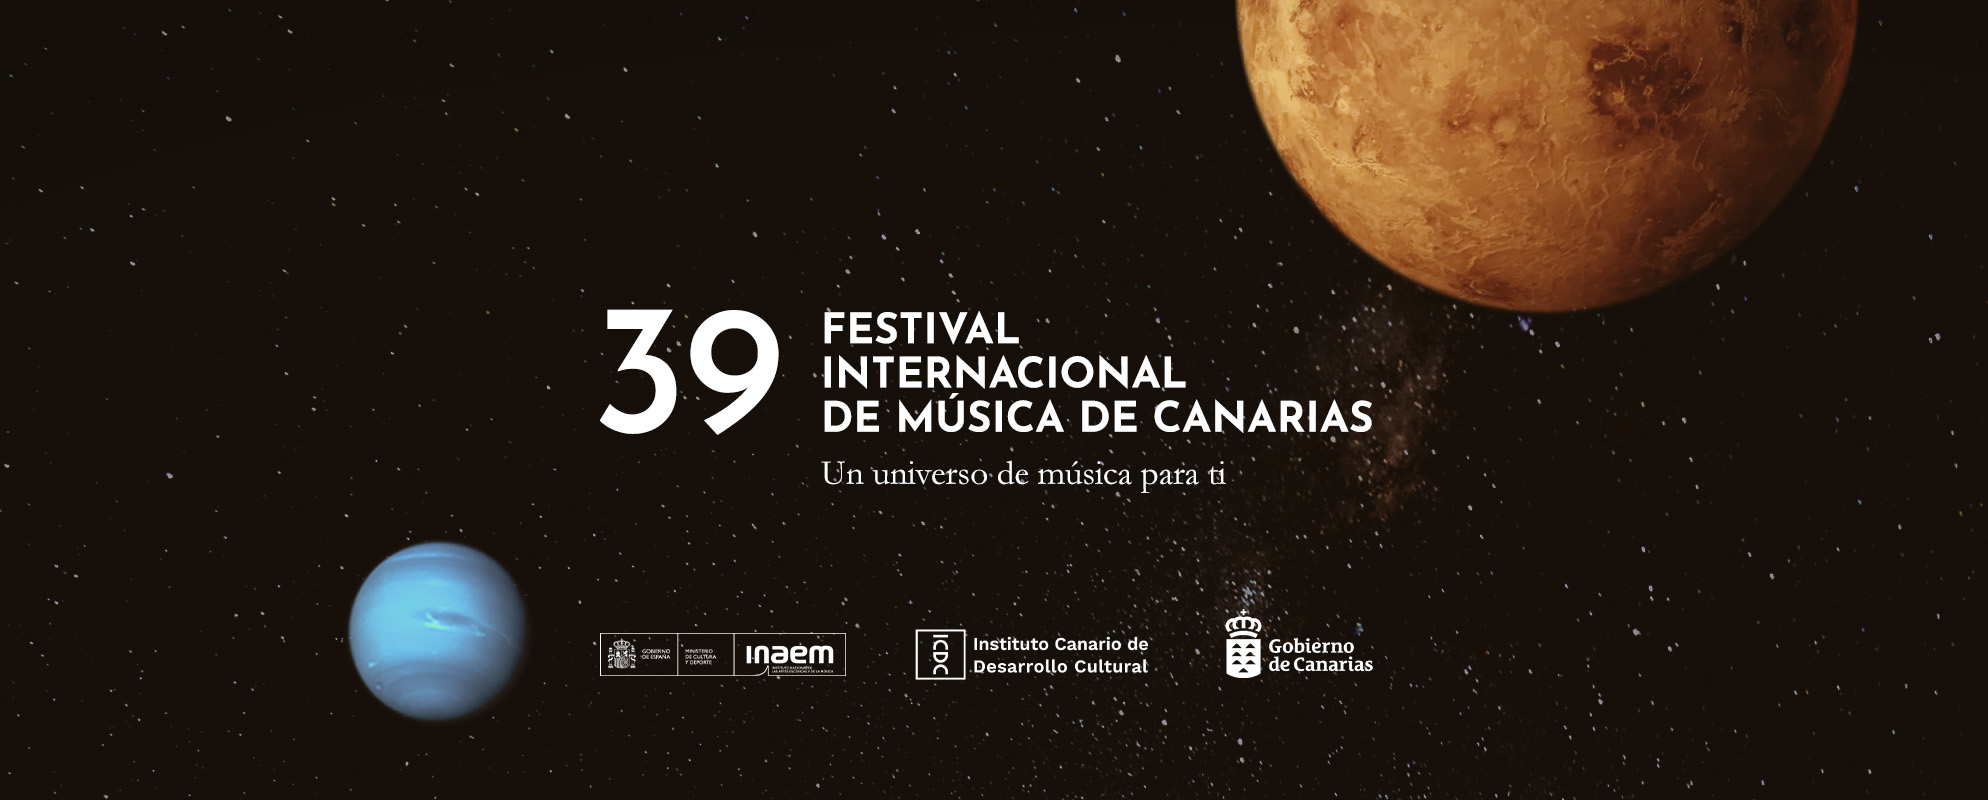 39o-Festival-Internacional-de-Musica-de-Canarias.jpg 28 de